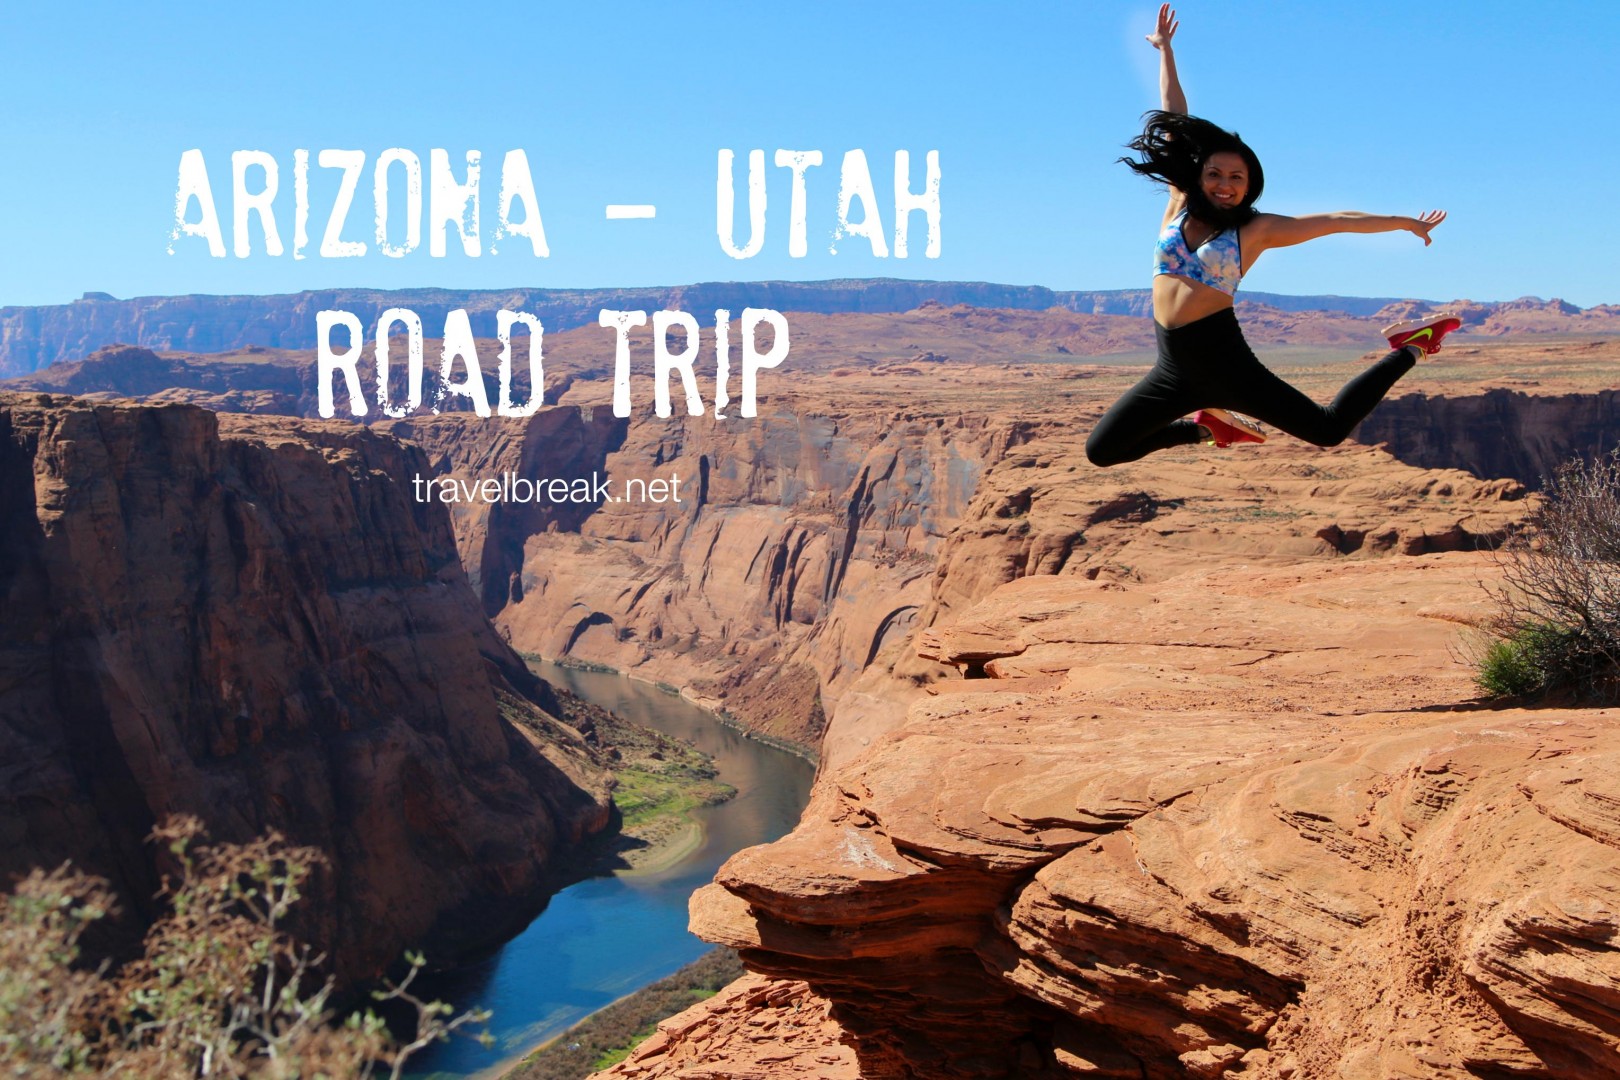 TravelBreak.net - Arizona - Utah road trip